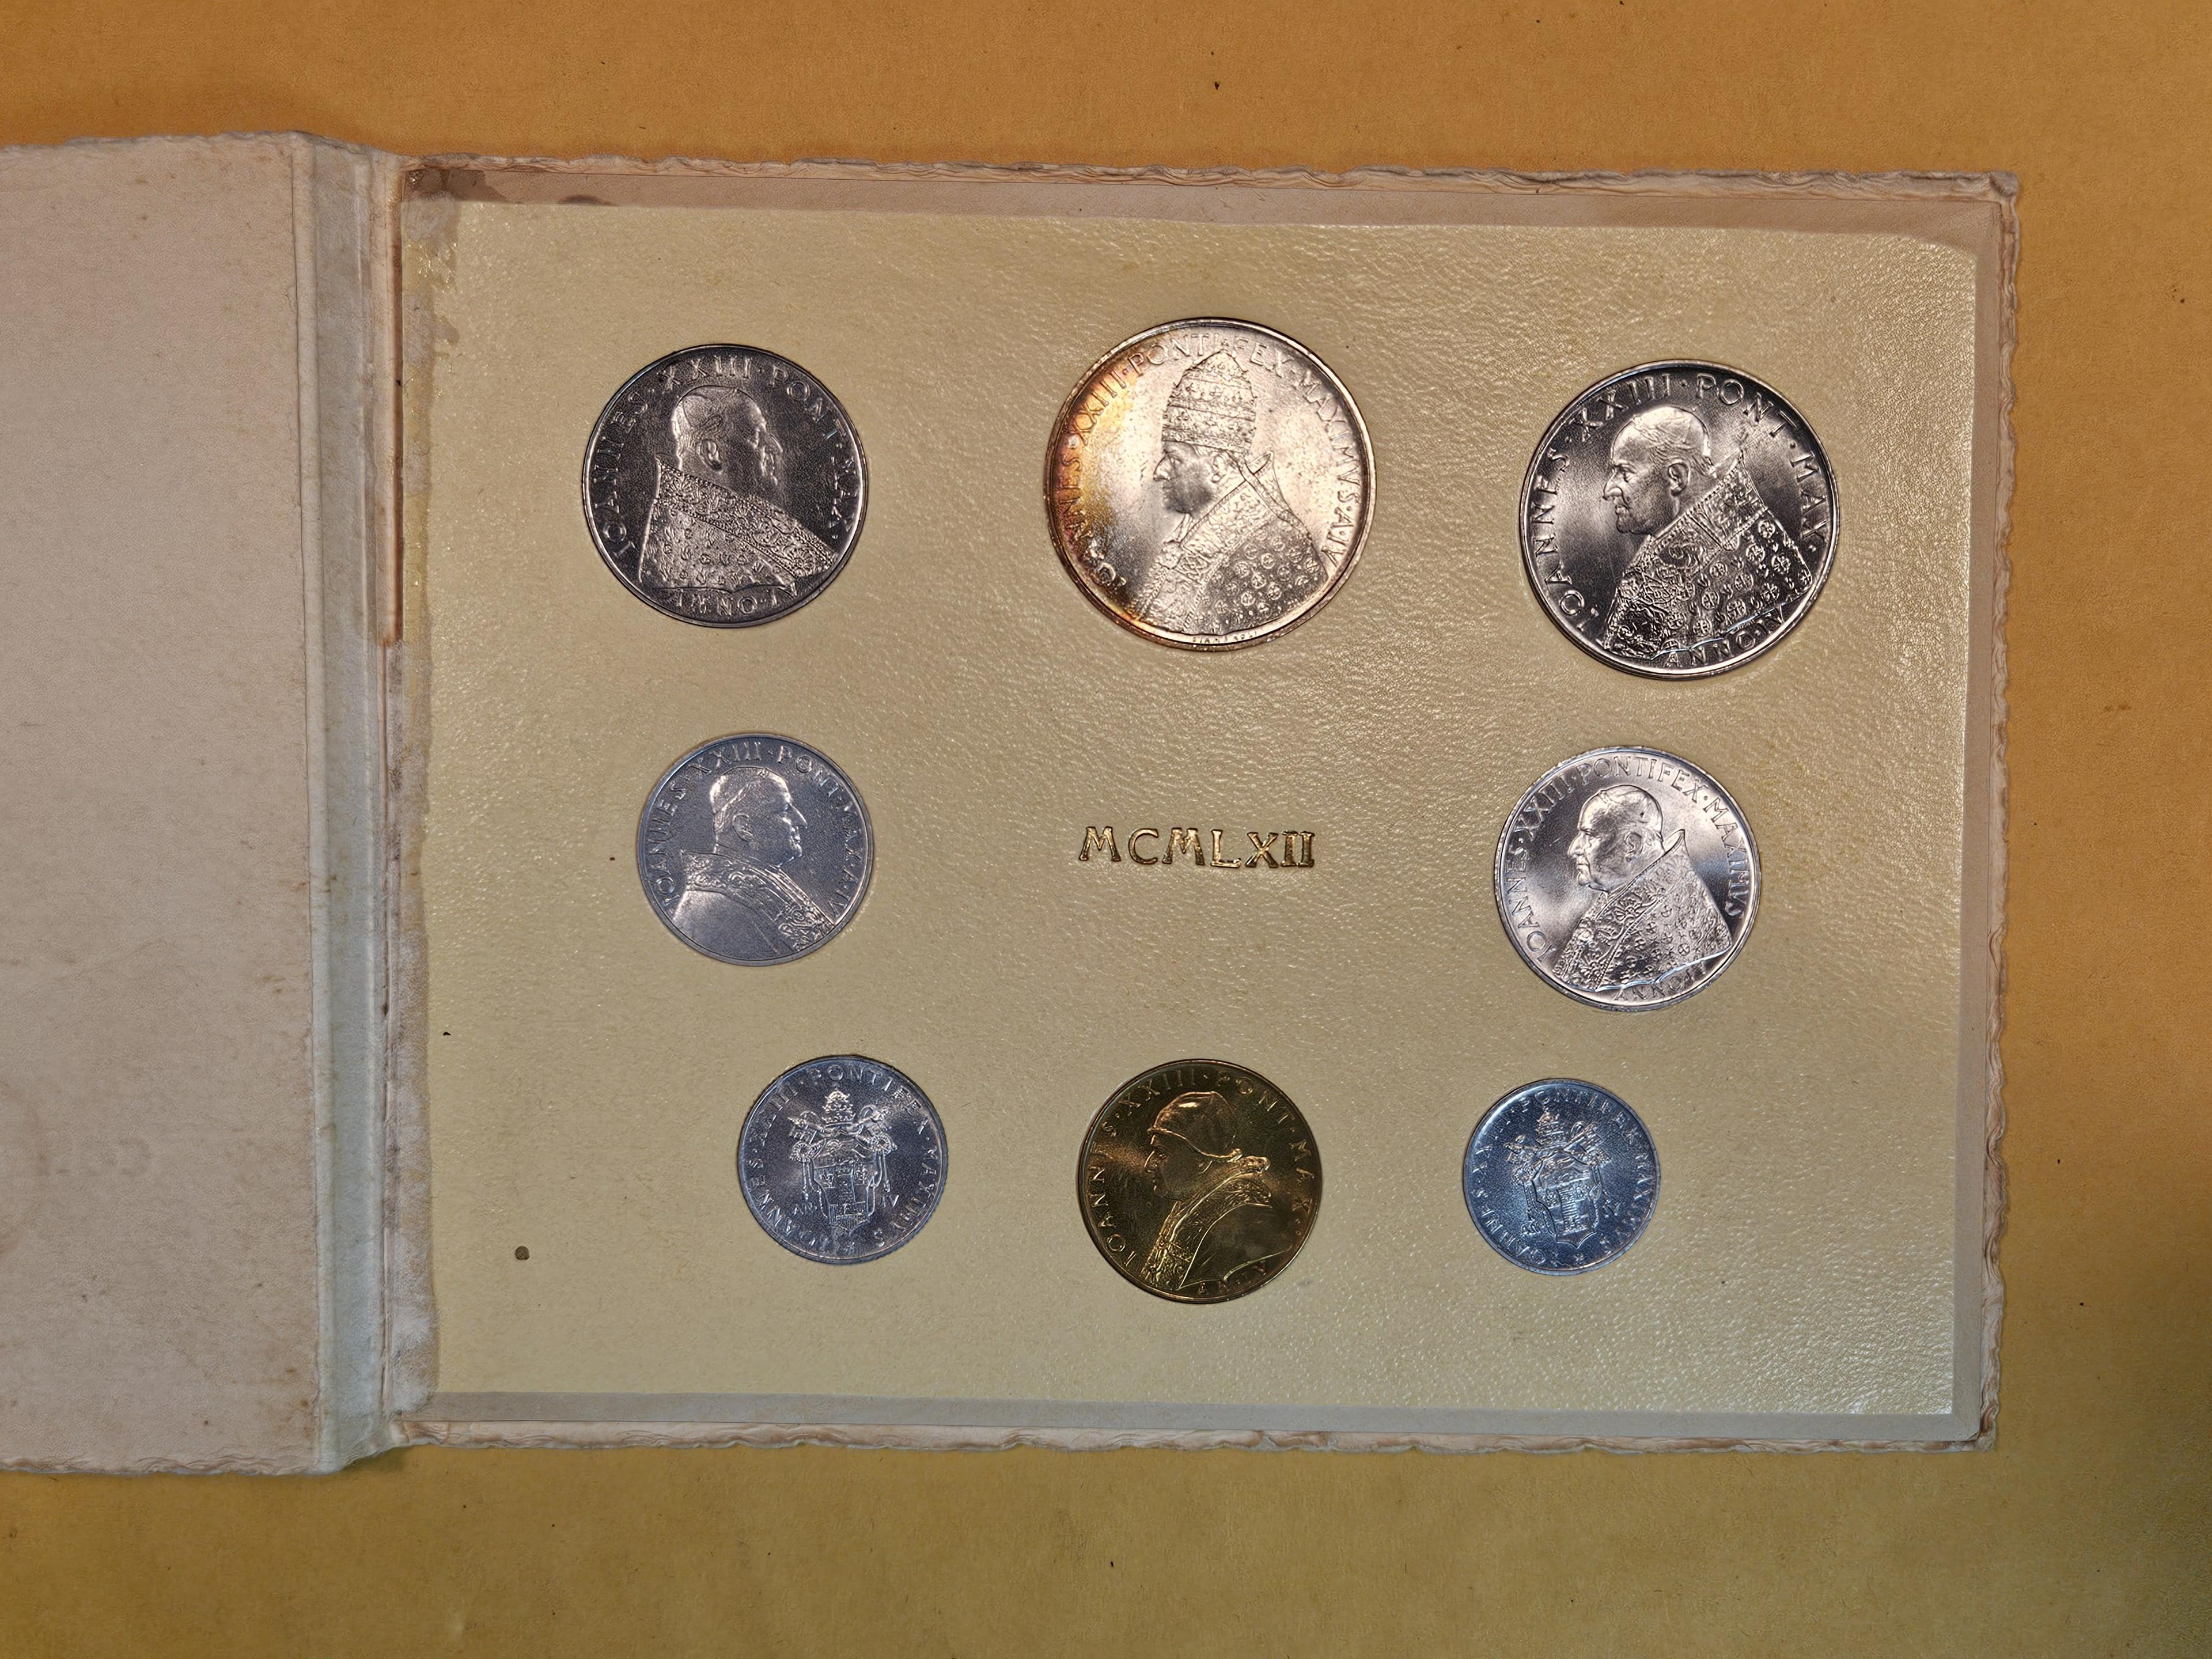 GEM Brilliant Uncirculated 1962 Vatican silver coin Set